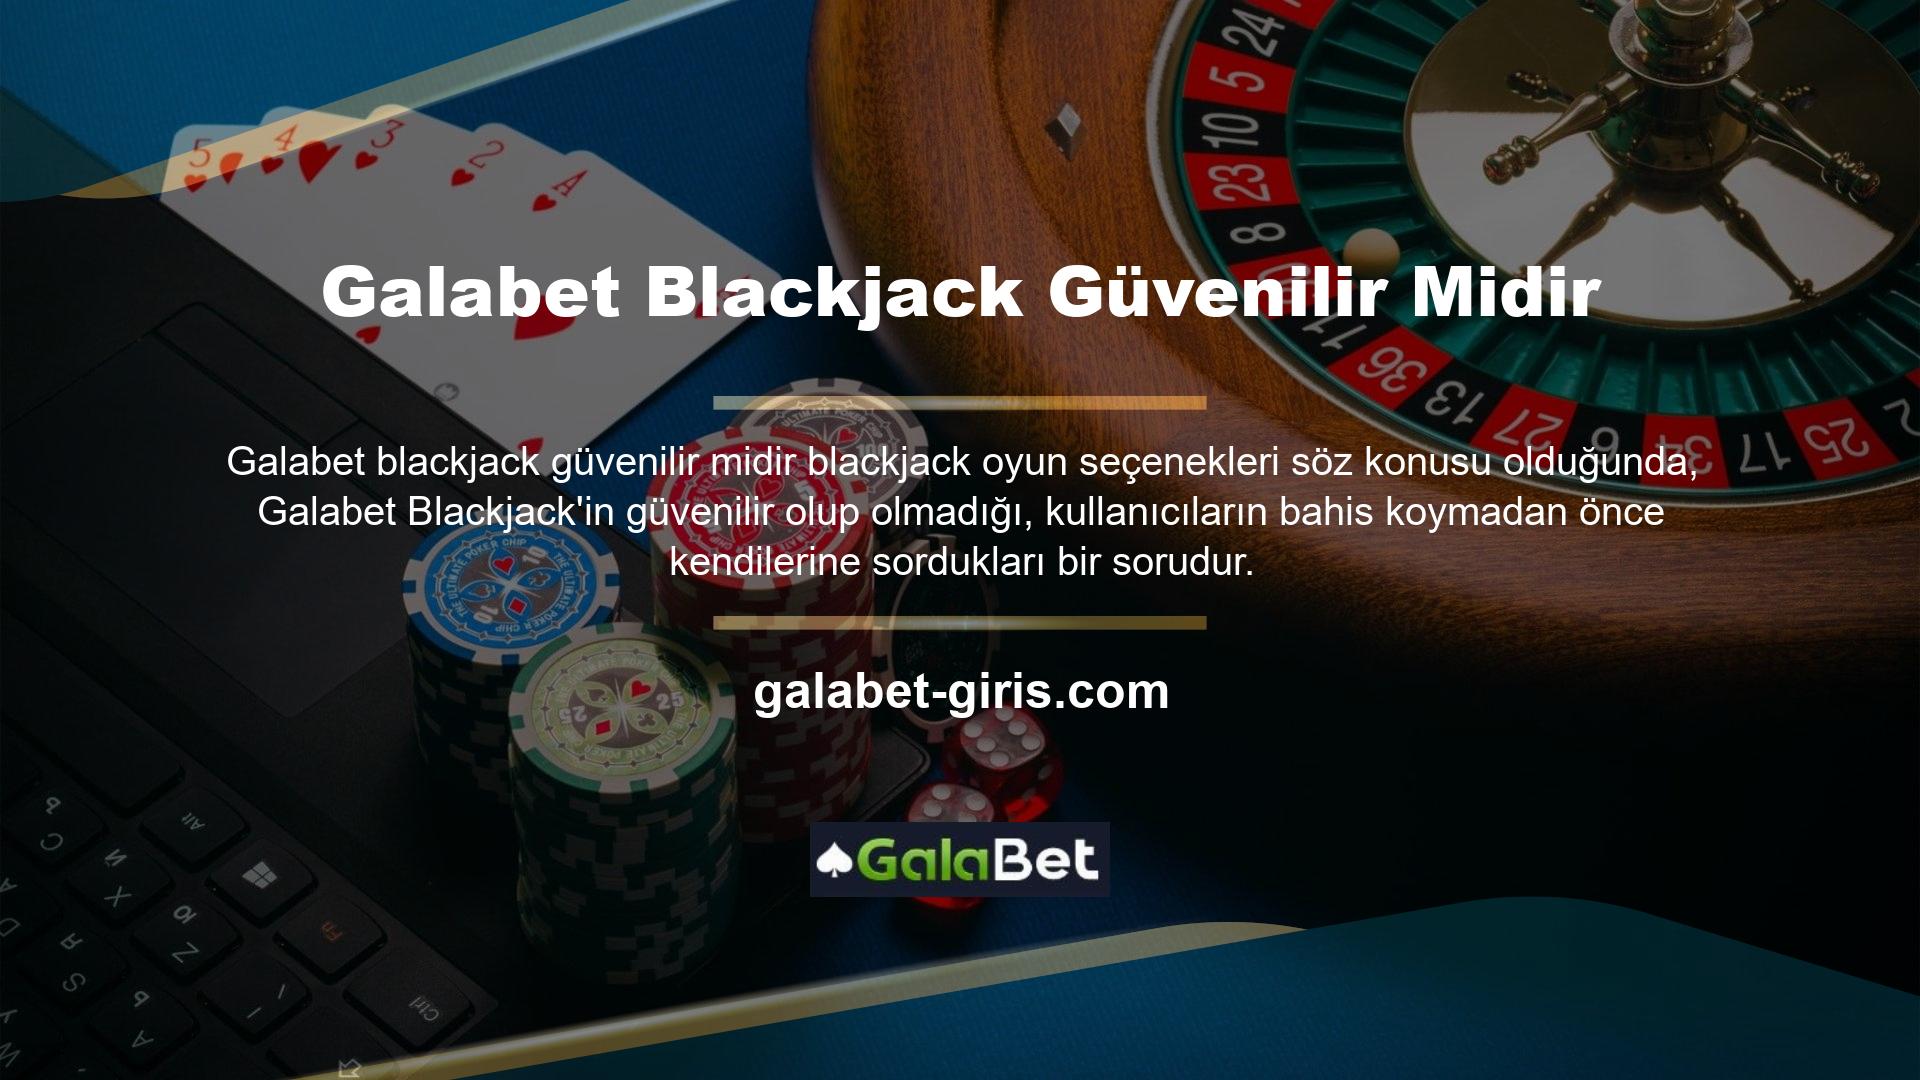 "Galabet Blackjack güvenilir midir?" sorusunda öncelikle oyunun altyapısı hakkında bilgi, ardından lisans hakkında bilgi verilmektedir